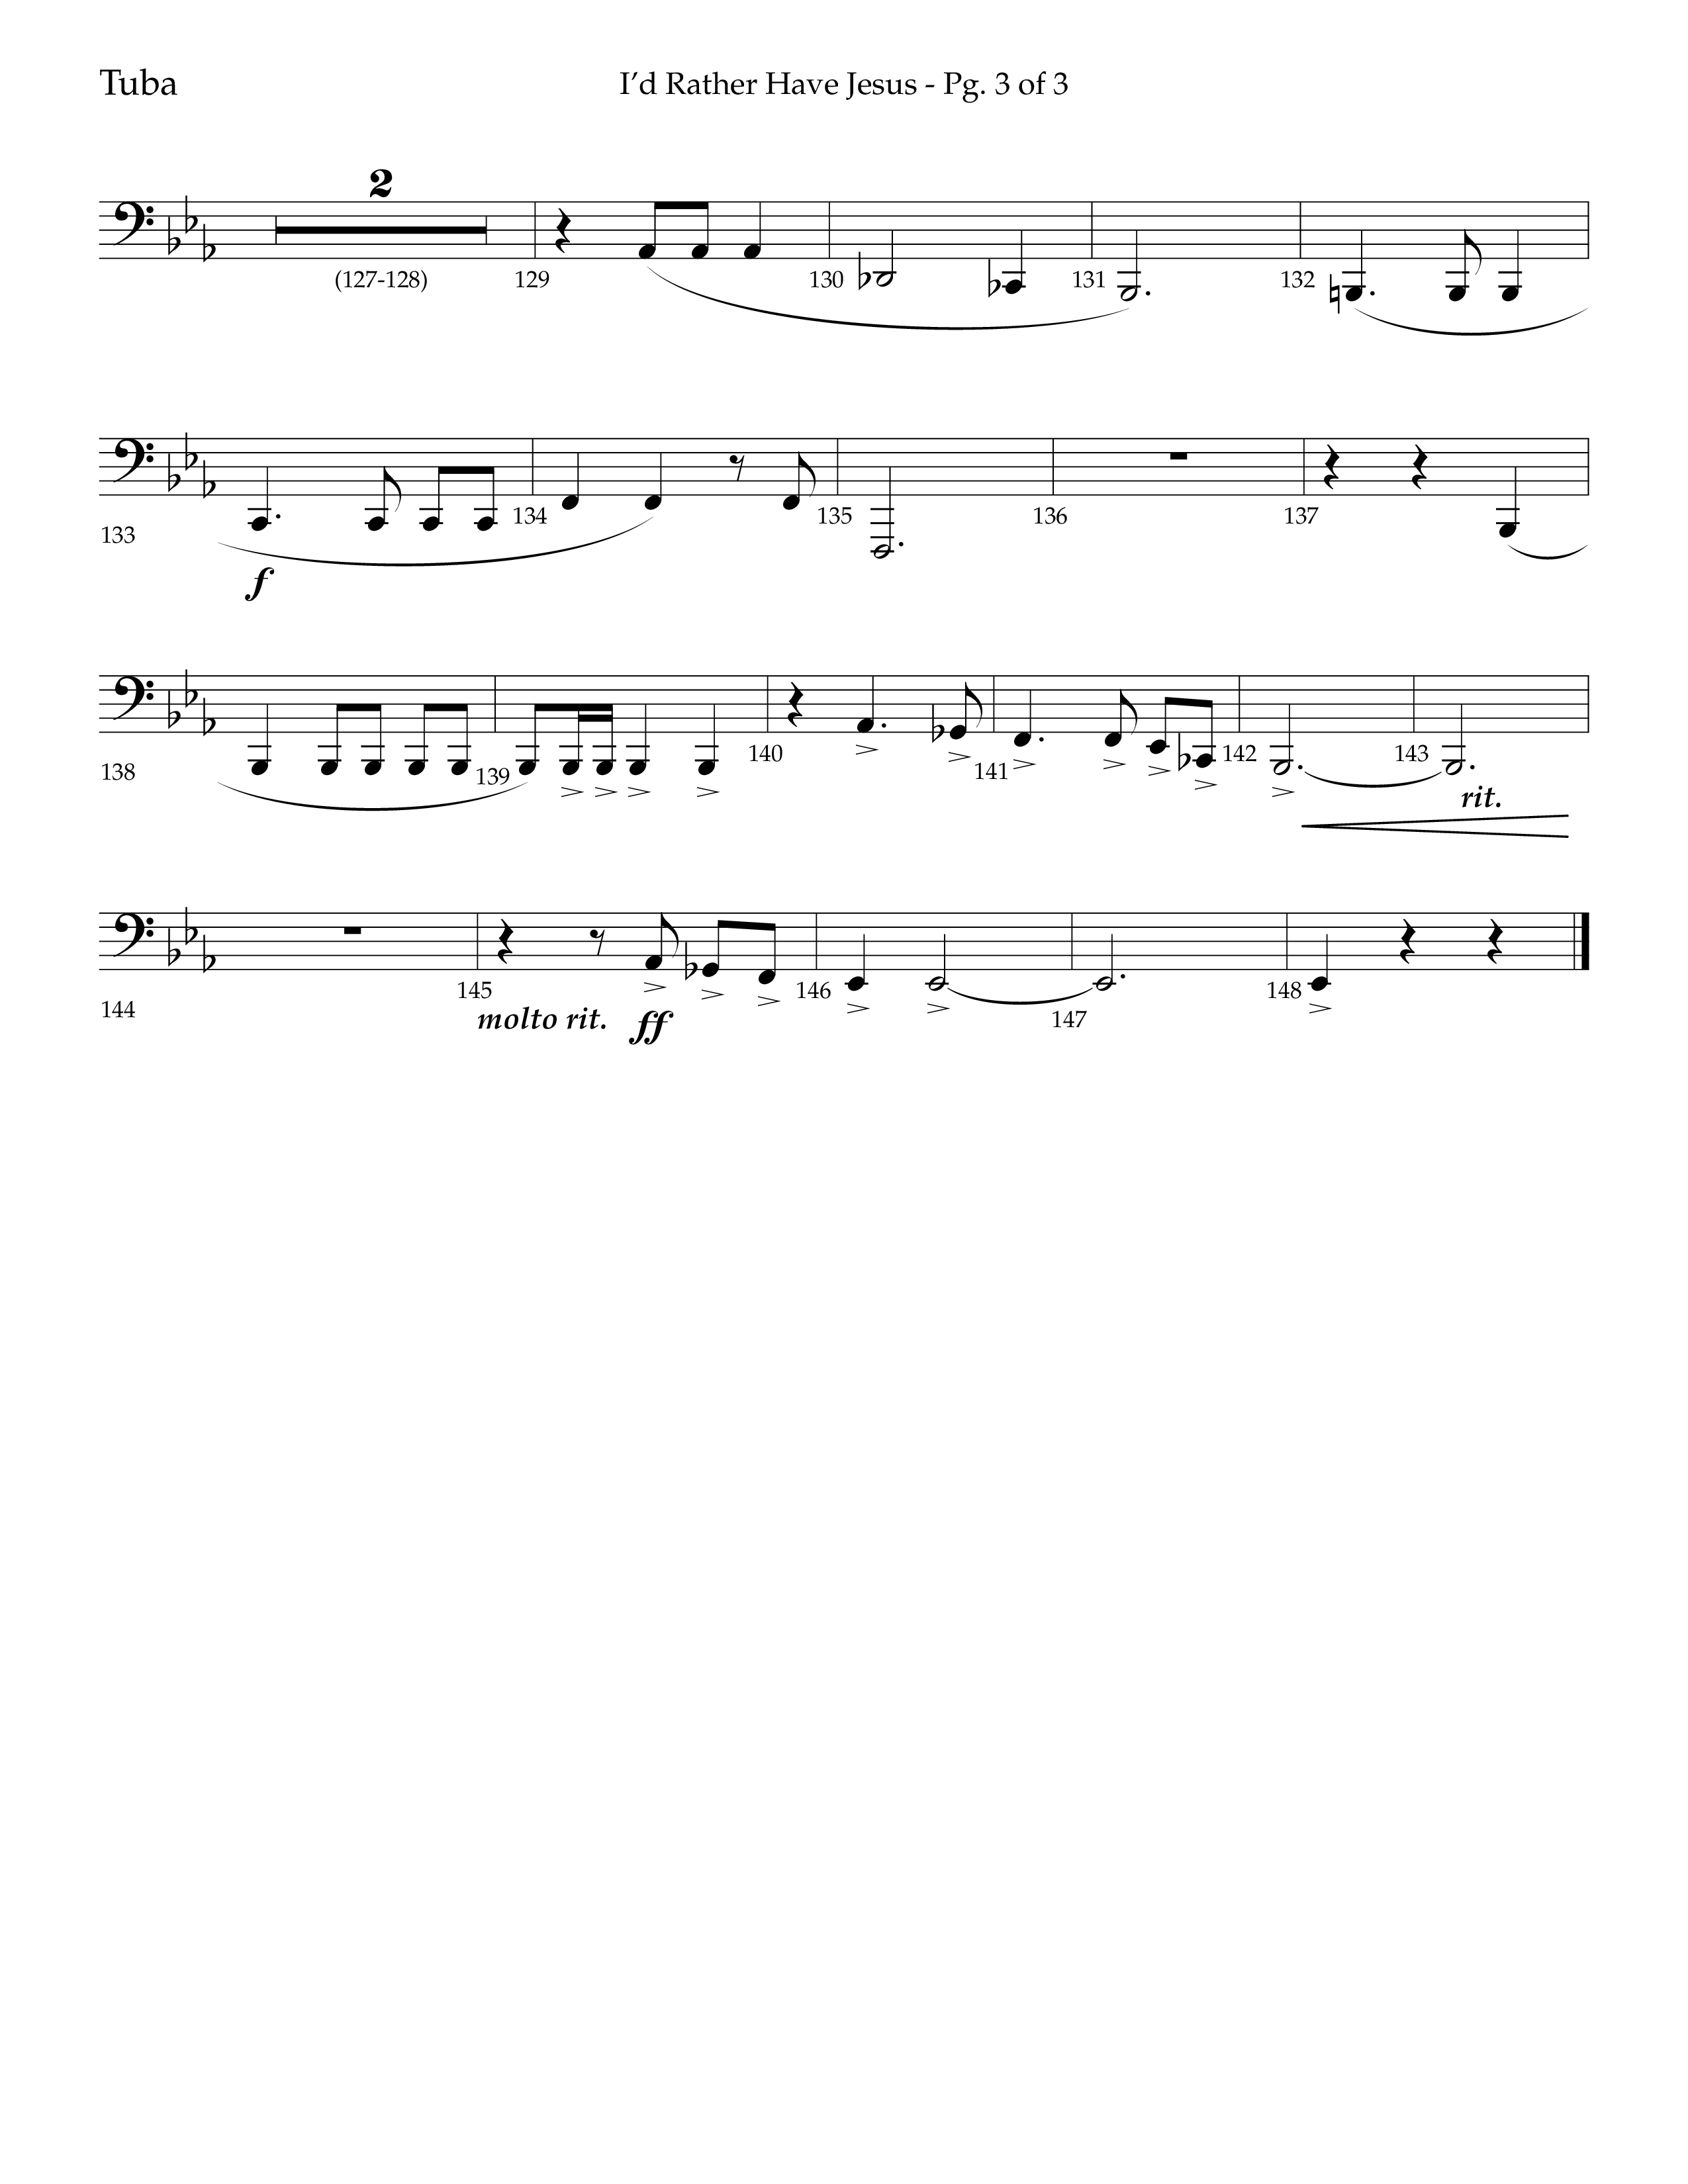 I'd Rather Have Jesus (Choral Anthem SATB) Tuba (Lifeway Choral / Arr. Richard Kingsmore)